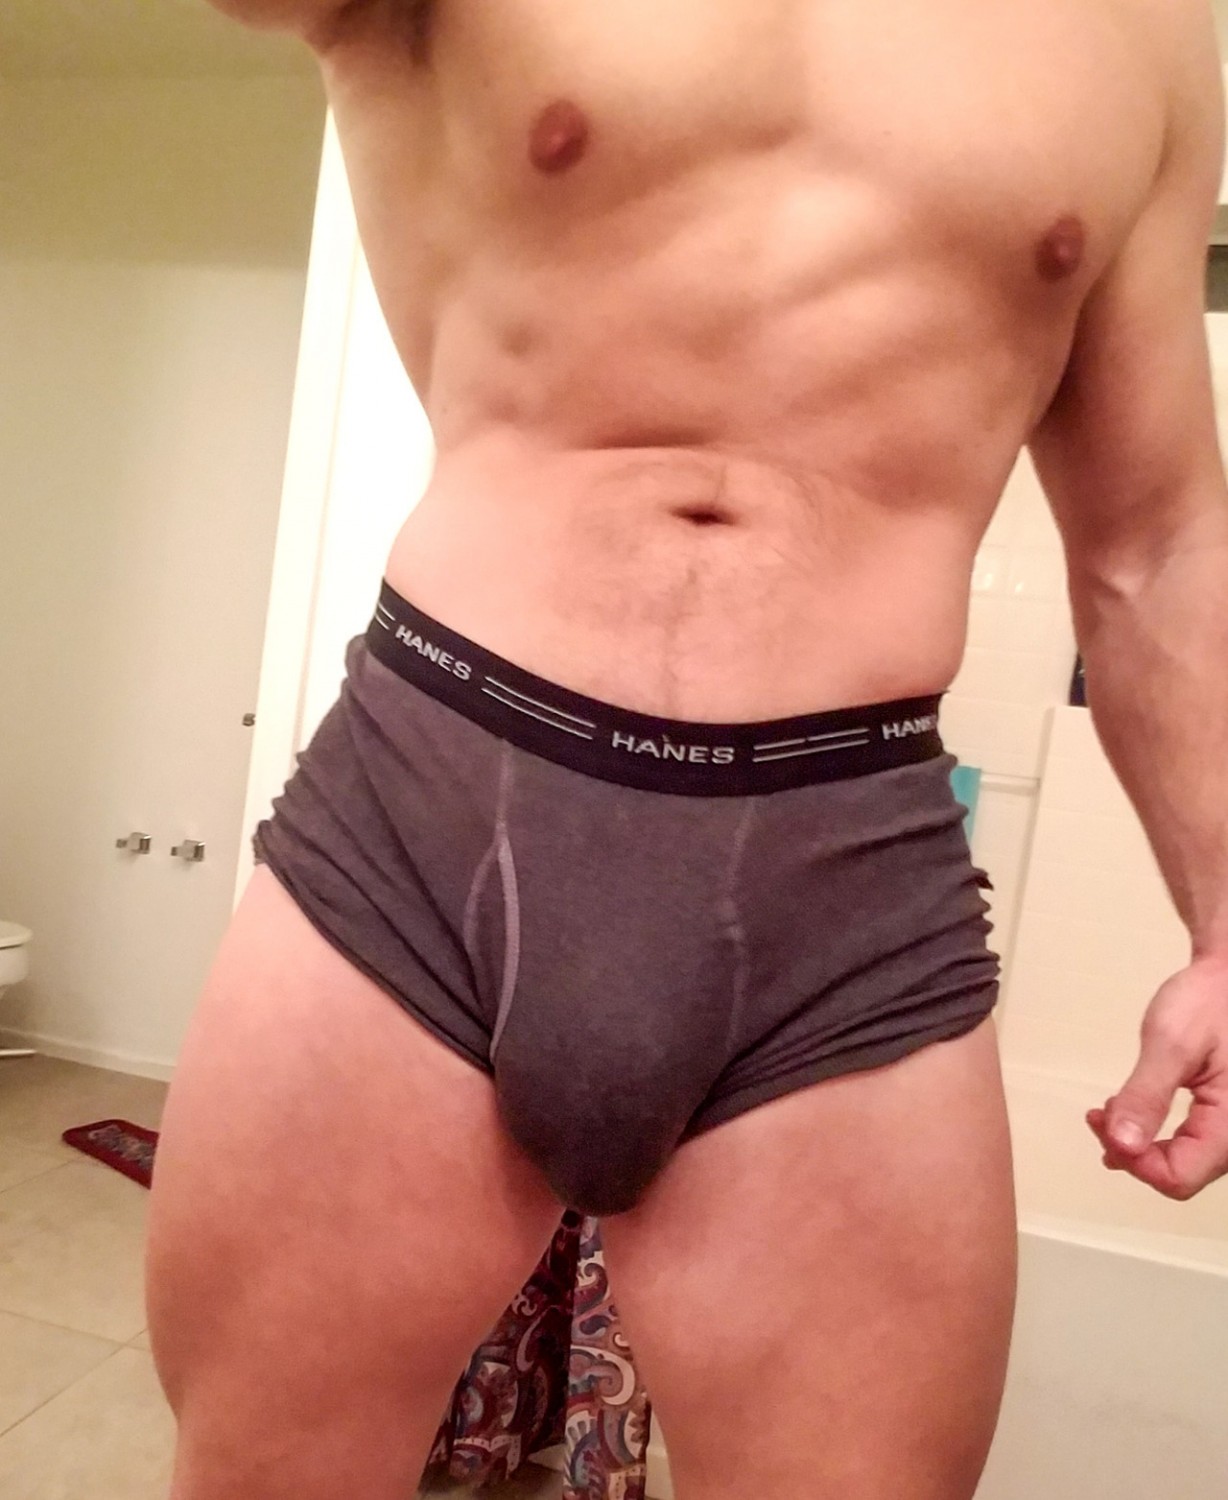 Large Dick Porn - Big bulge, big dick. - Porn Videos & Photos - EroMe